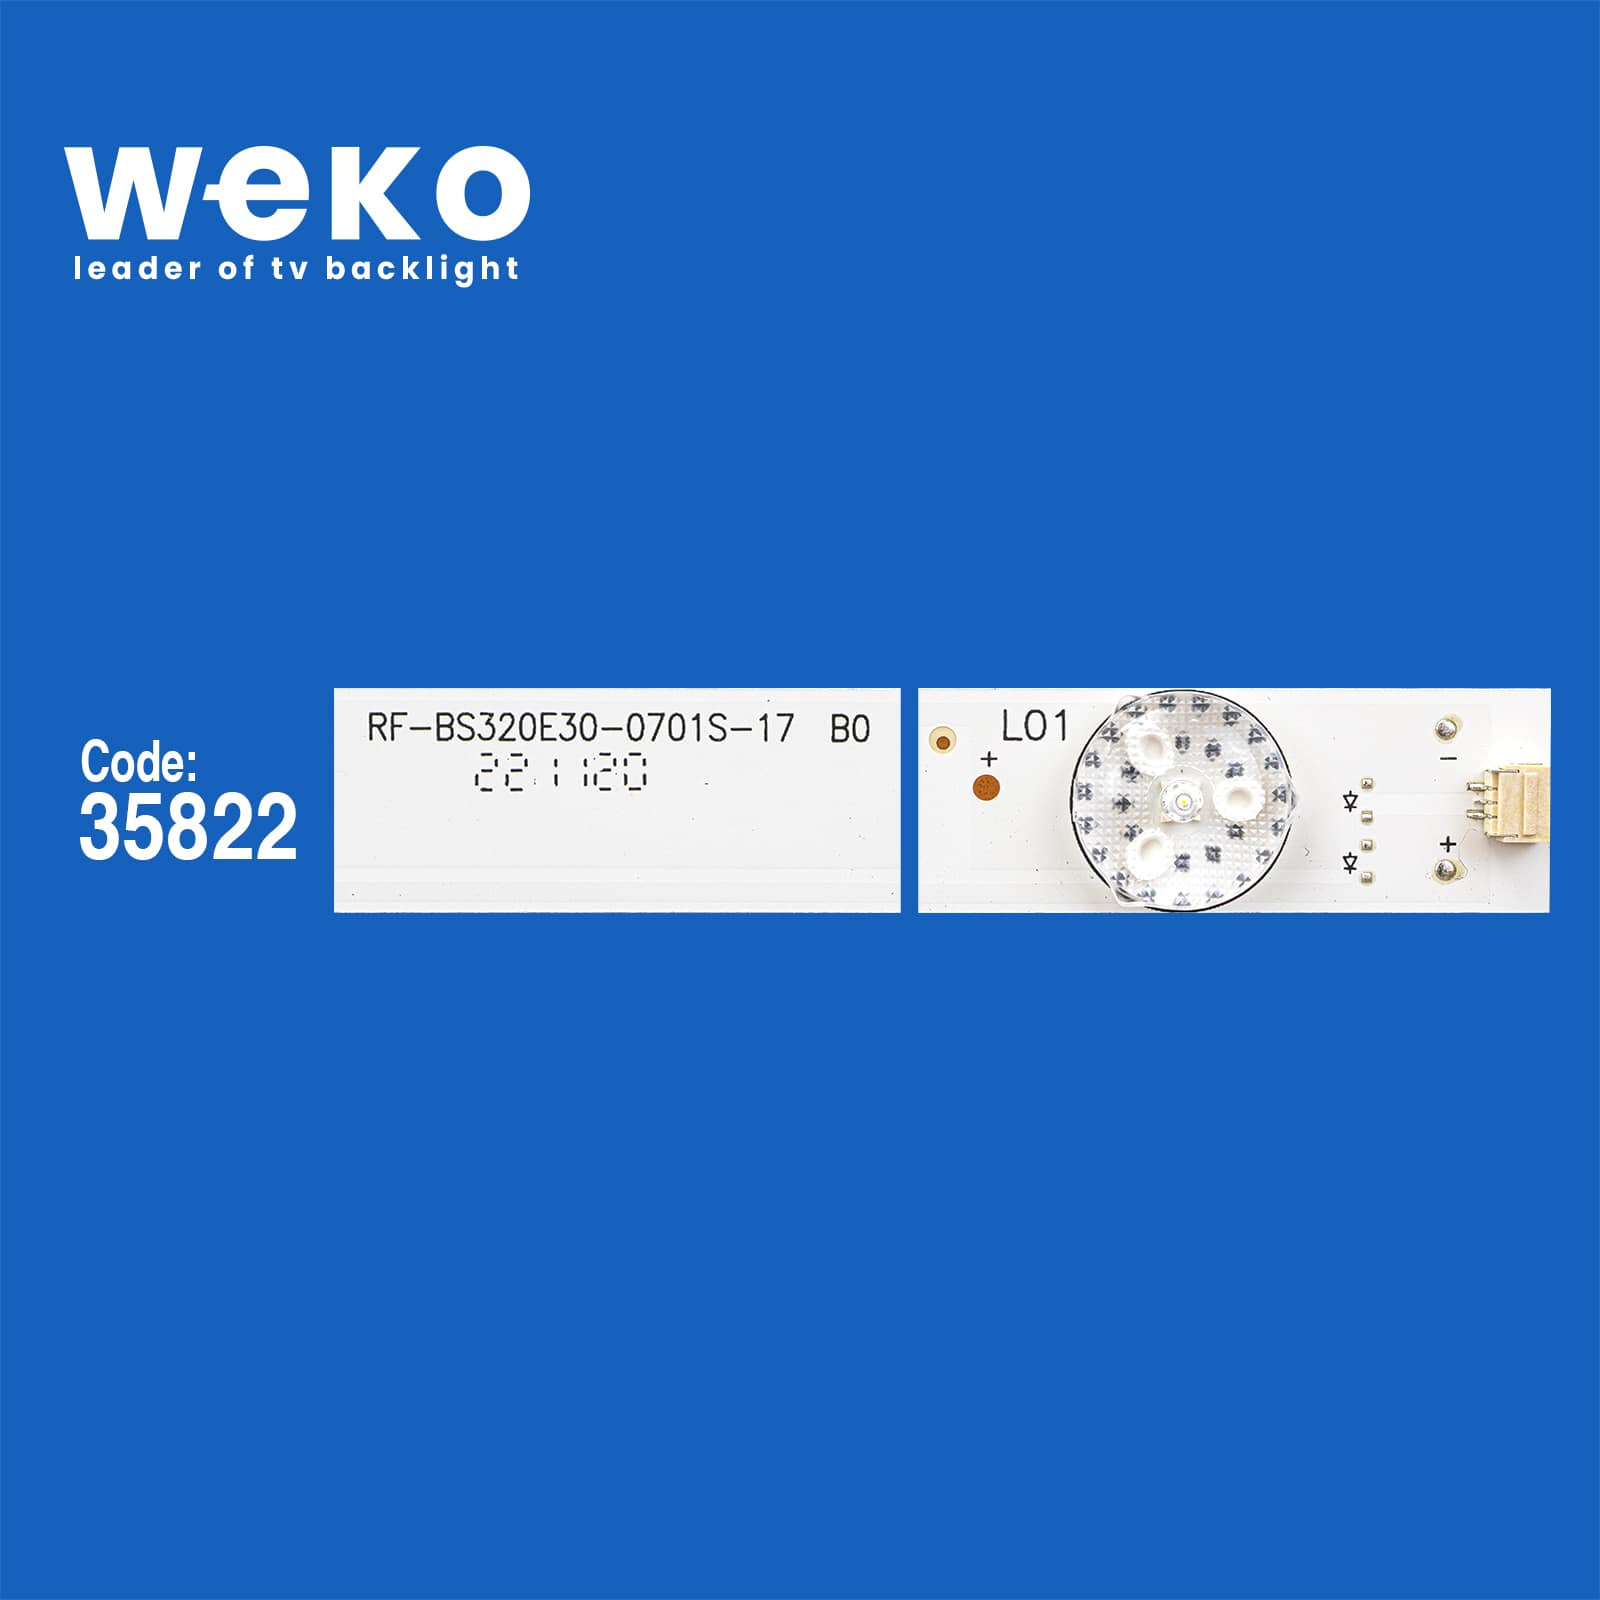 CLZ192 WKSET-5813 35822X2 RF-BS320E30-0701S-17B0 2 ADET LED BAR (4172)